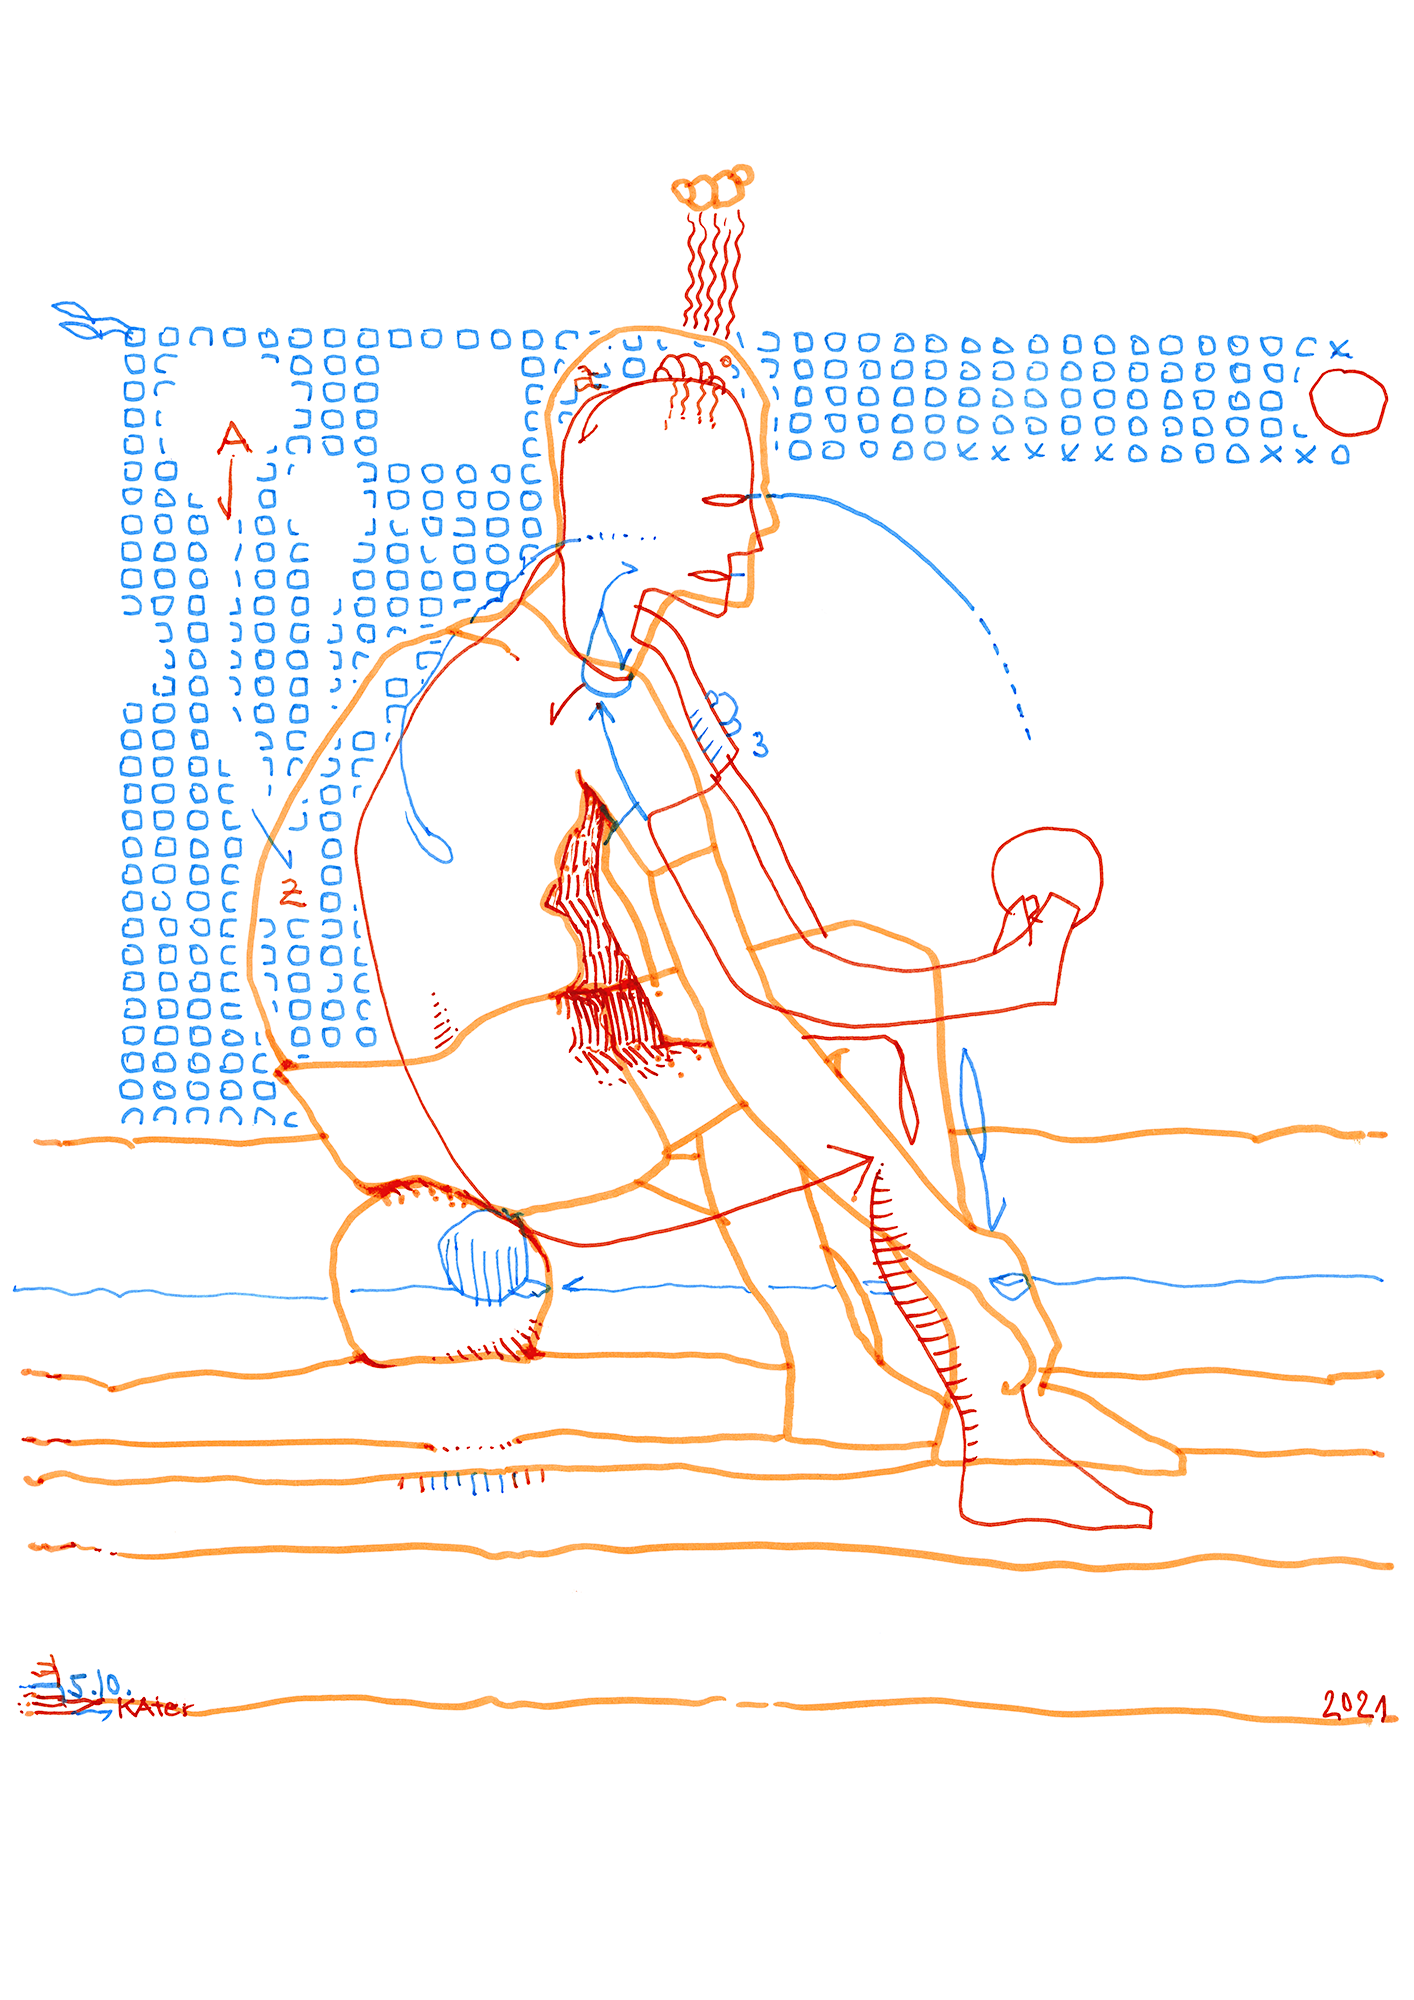 Hannes Kater: Tageszeichnung (Zeichnung/drawing) vom 05.10.2021 (1414 x 2000 Pixel)